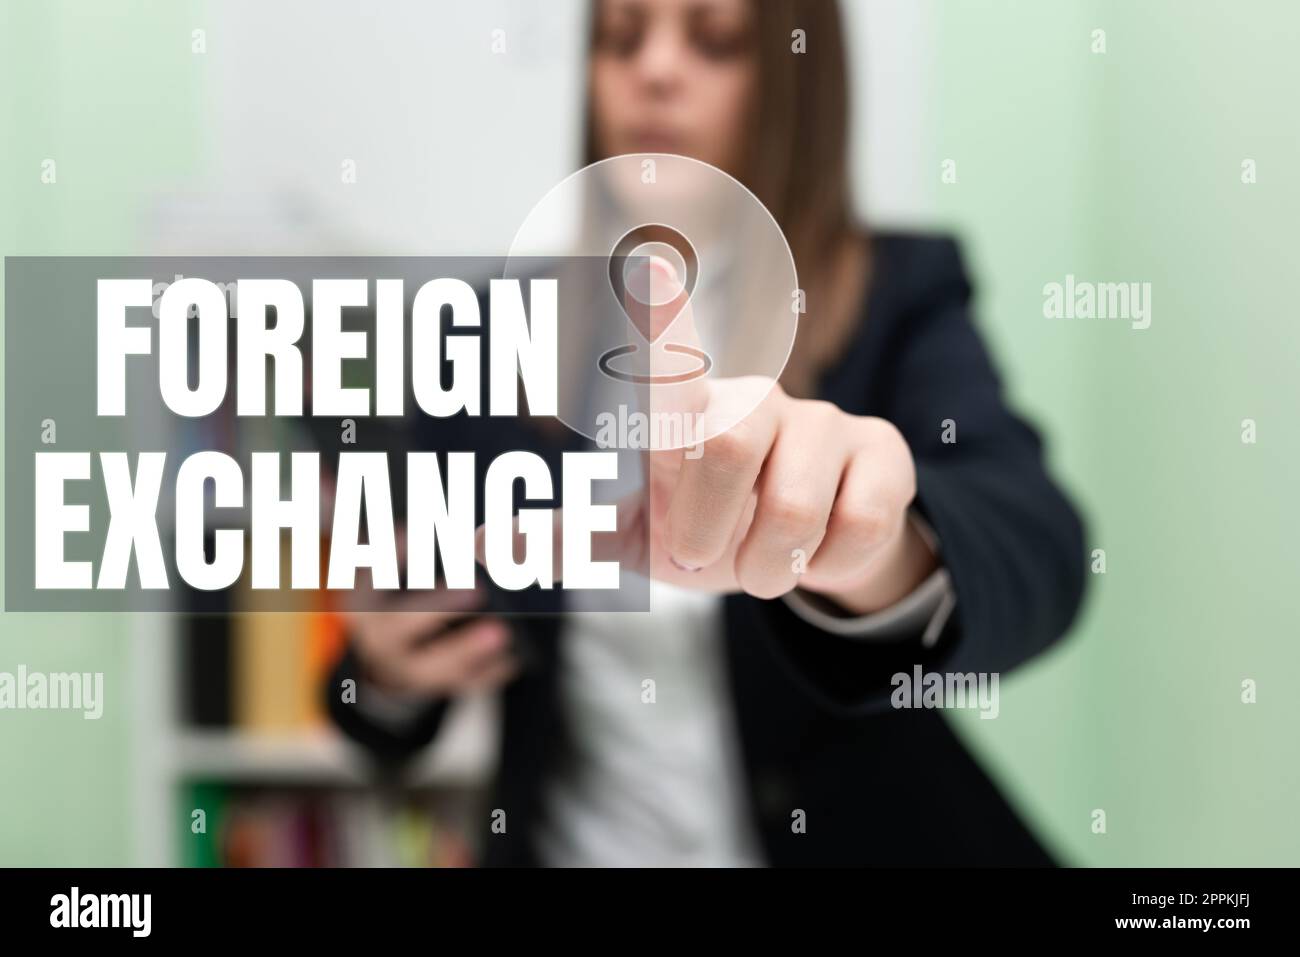 Handschrift Text Foreign Exchange. Business Overview System für den Handel in der Währung anderer Länder Stockfoto